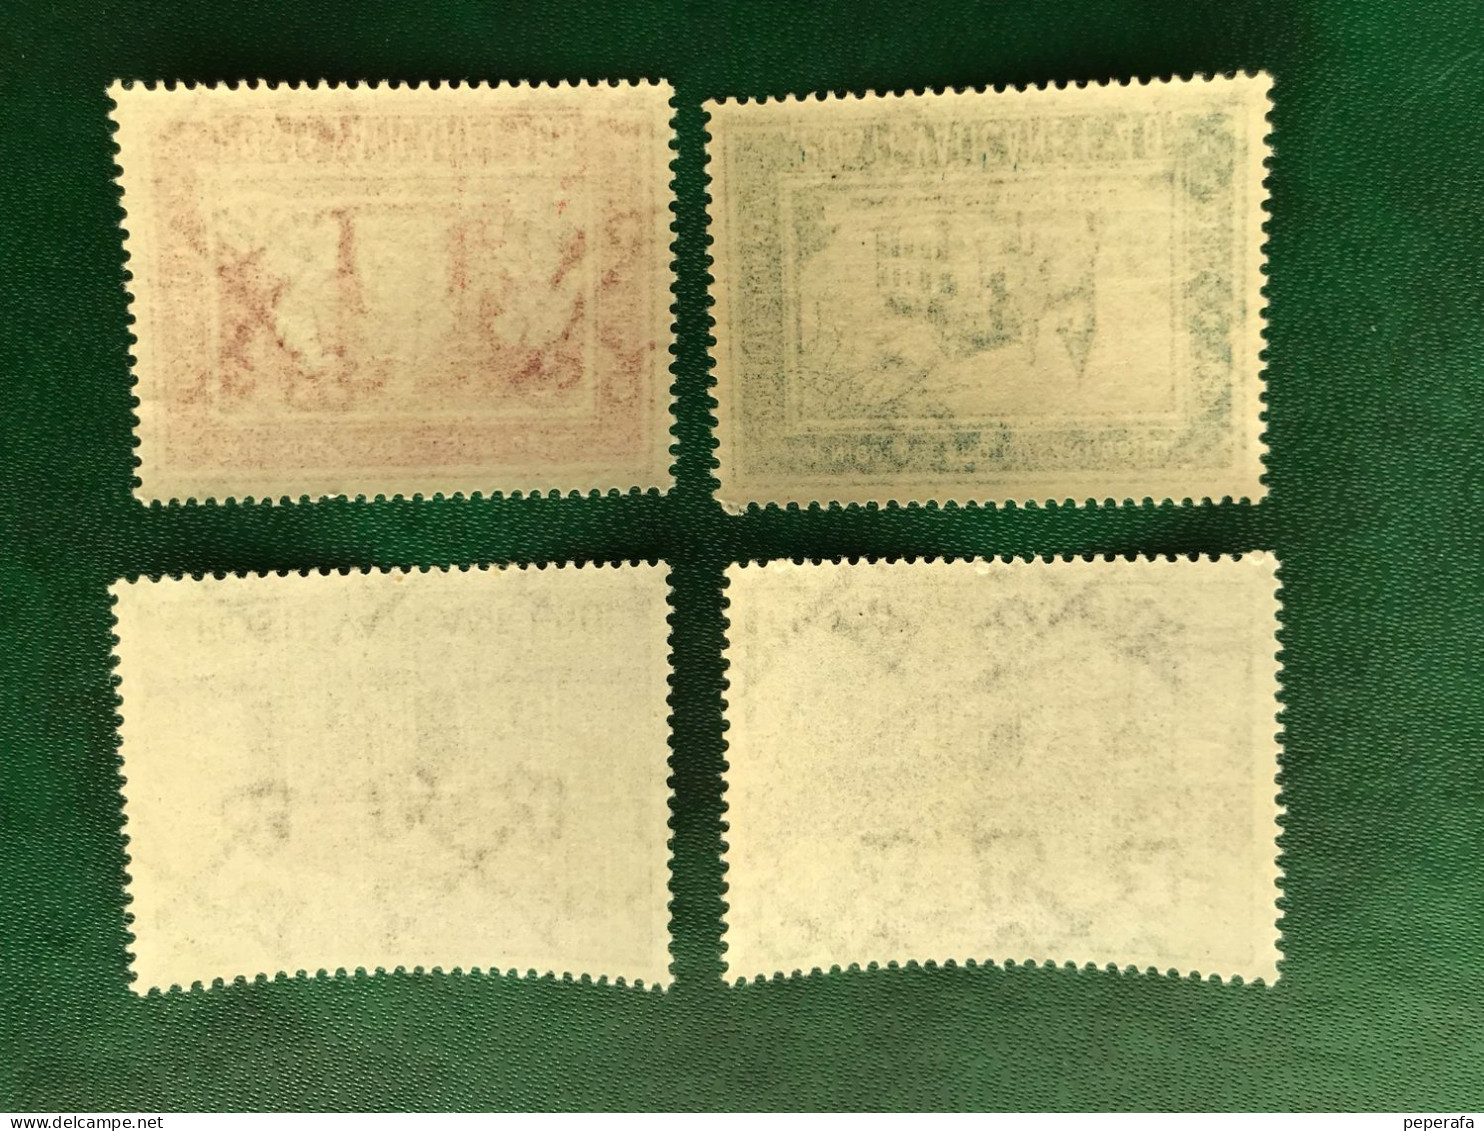 POSTE VATICANE VATICANO PAULUS Visit To India - Unused Stamps